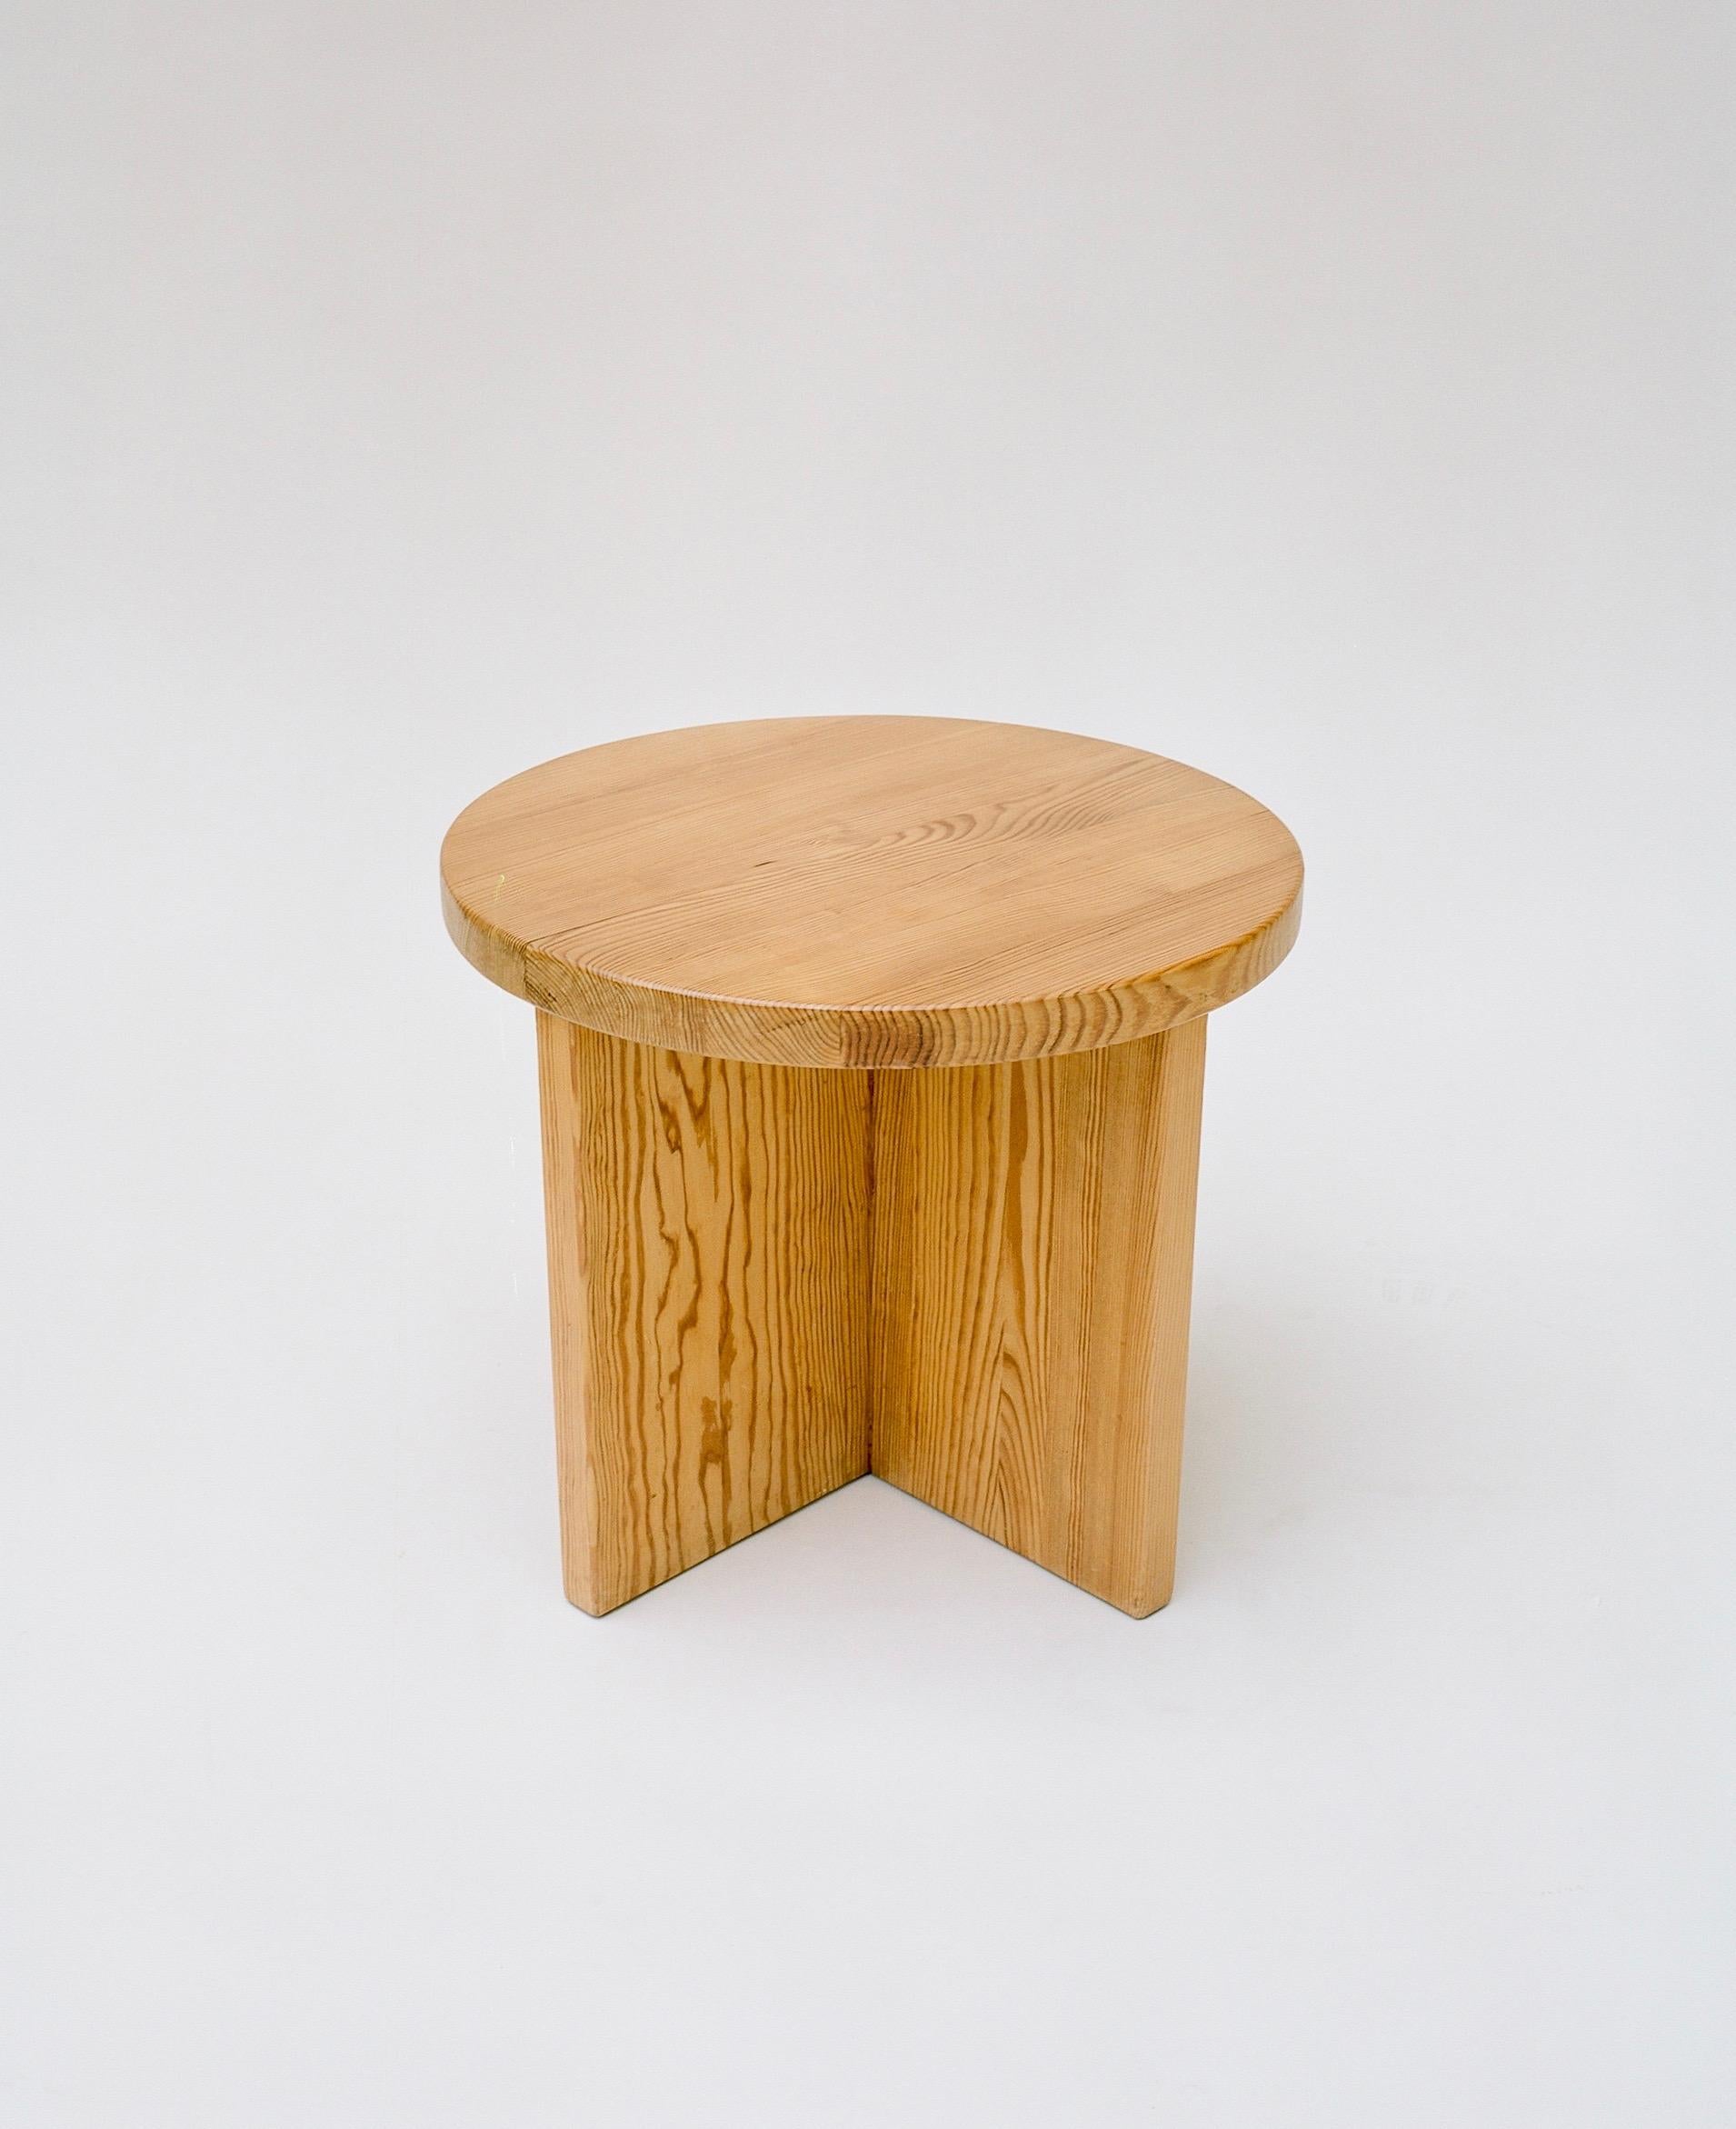 Pine Axel Einar Hjorth 'Lovö' Side Table, 1932